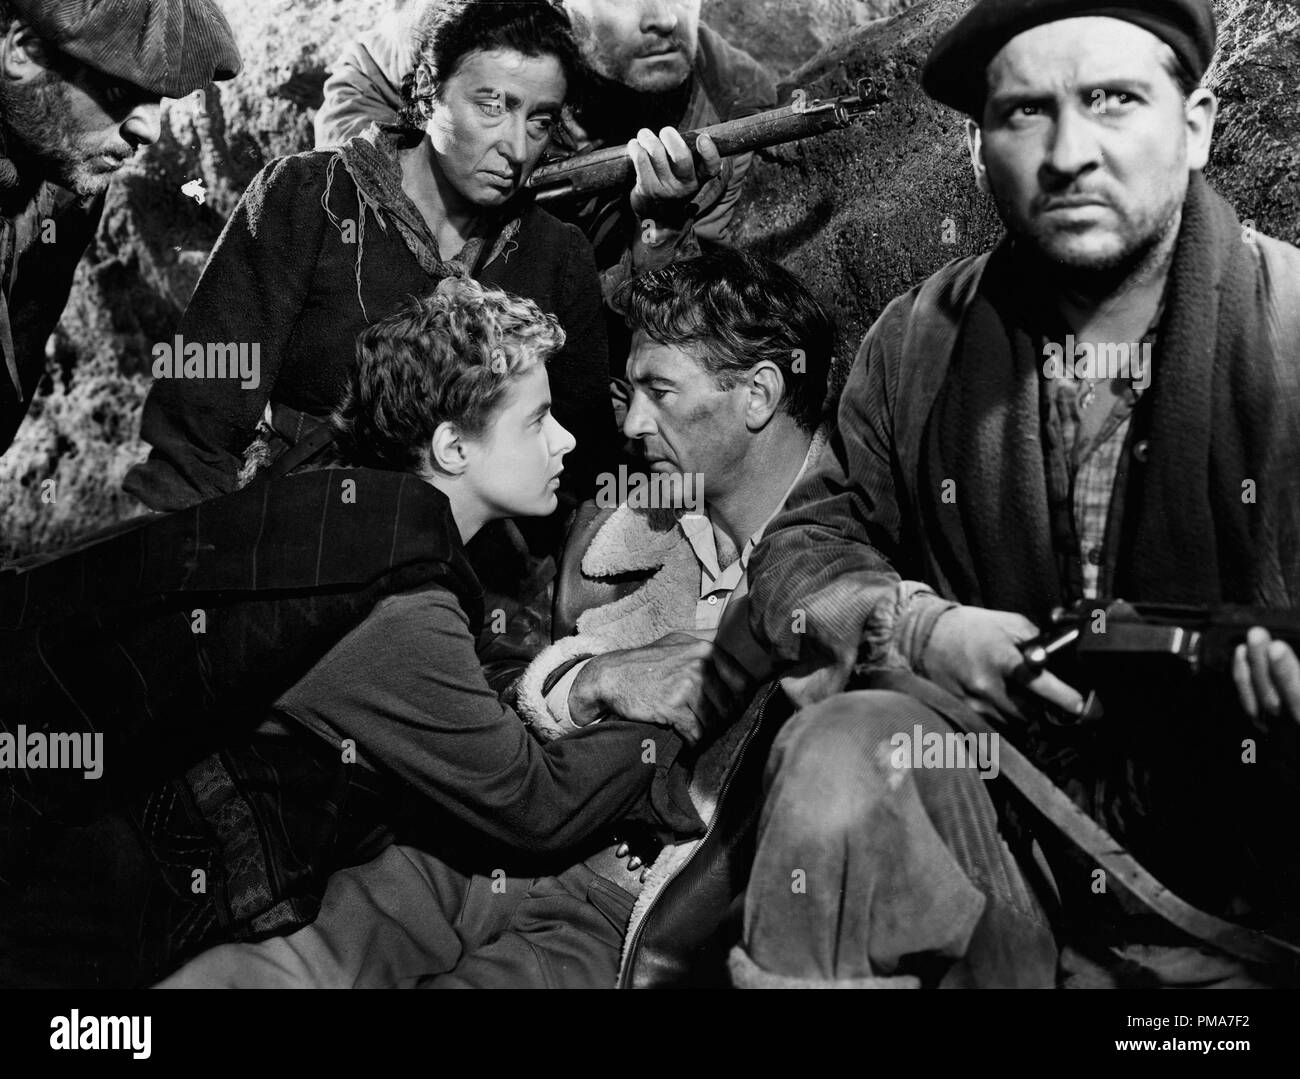 Ingrid Bergman, Gary Cooper, Arturo de Cordova und Katina Paxinou, "Wem die Stunde schlägt", 1943 Paramount Pictures Datei Referenz # 32263 353 THA Stockfoto